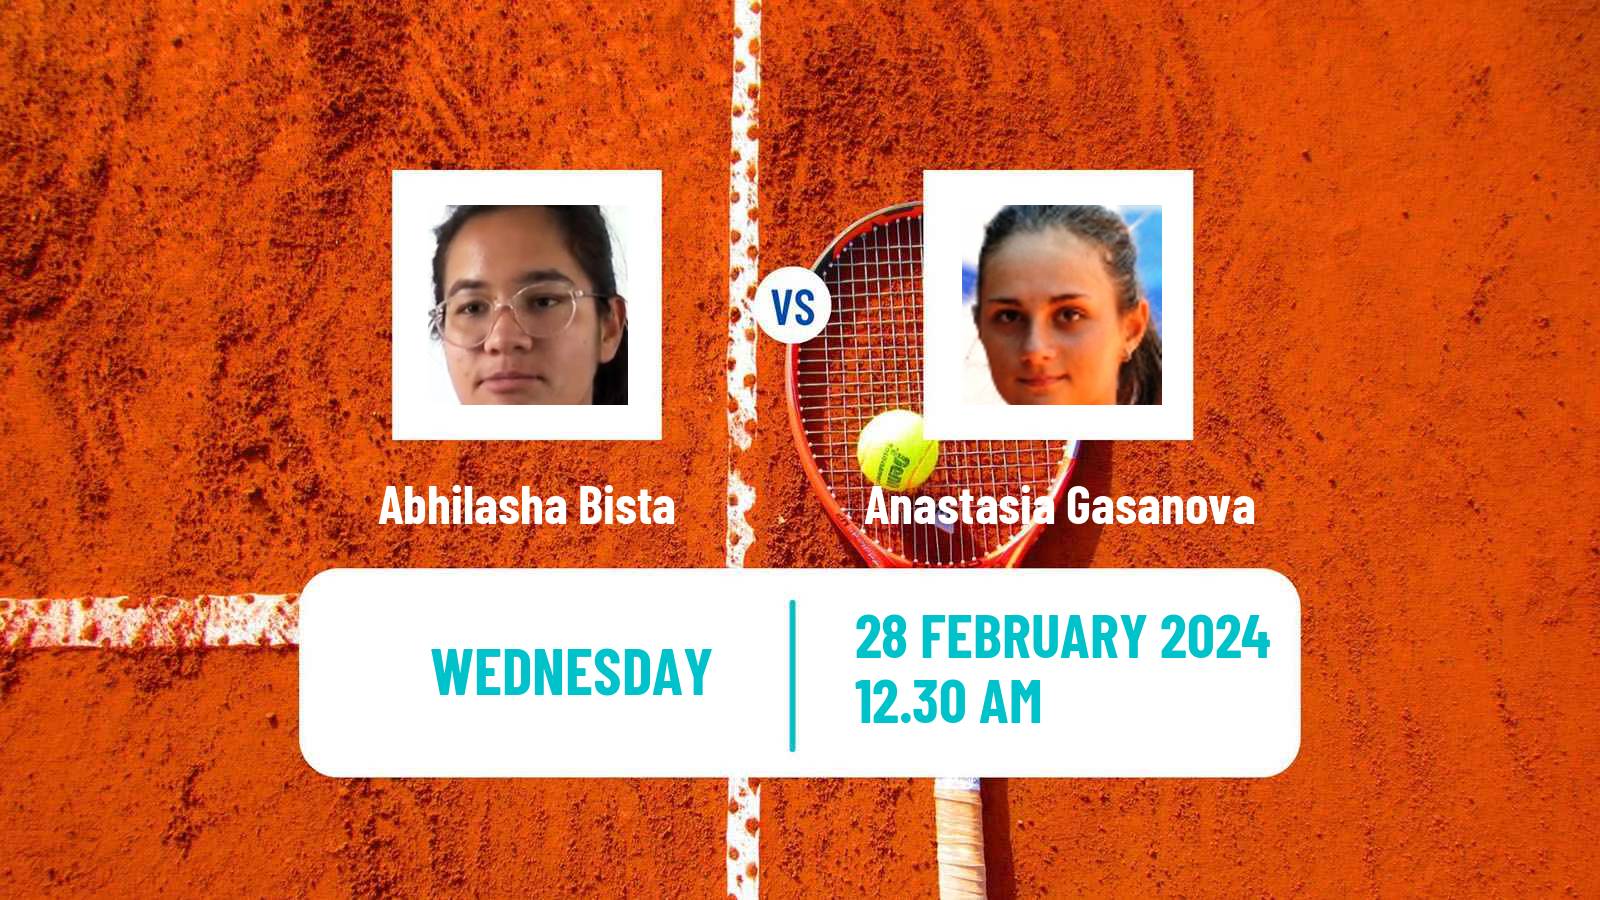 Tennis ITF W35 Gurugram Women Abhilasha Bista - Anastasia Gasanova